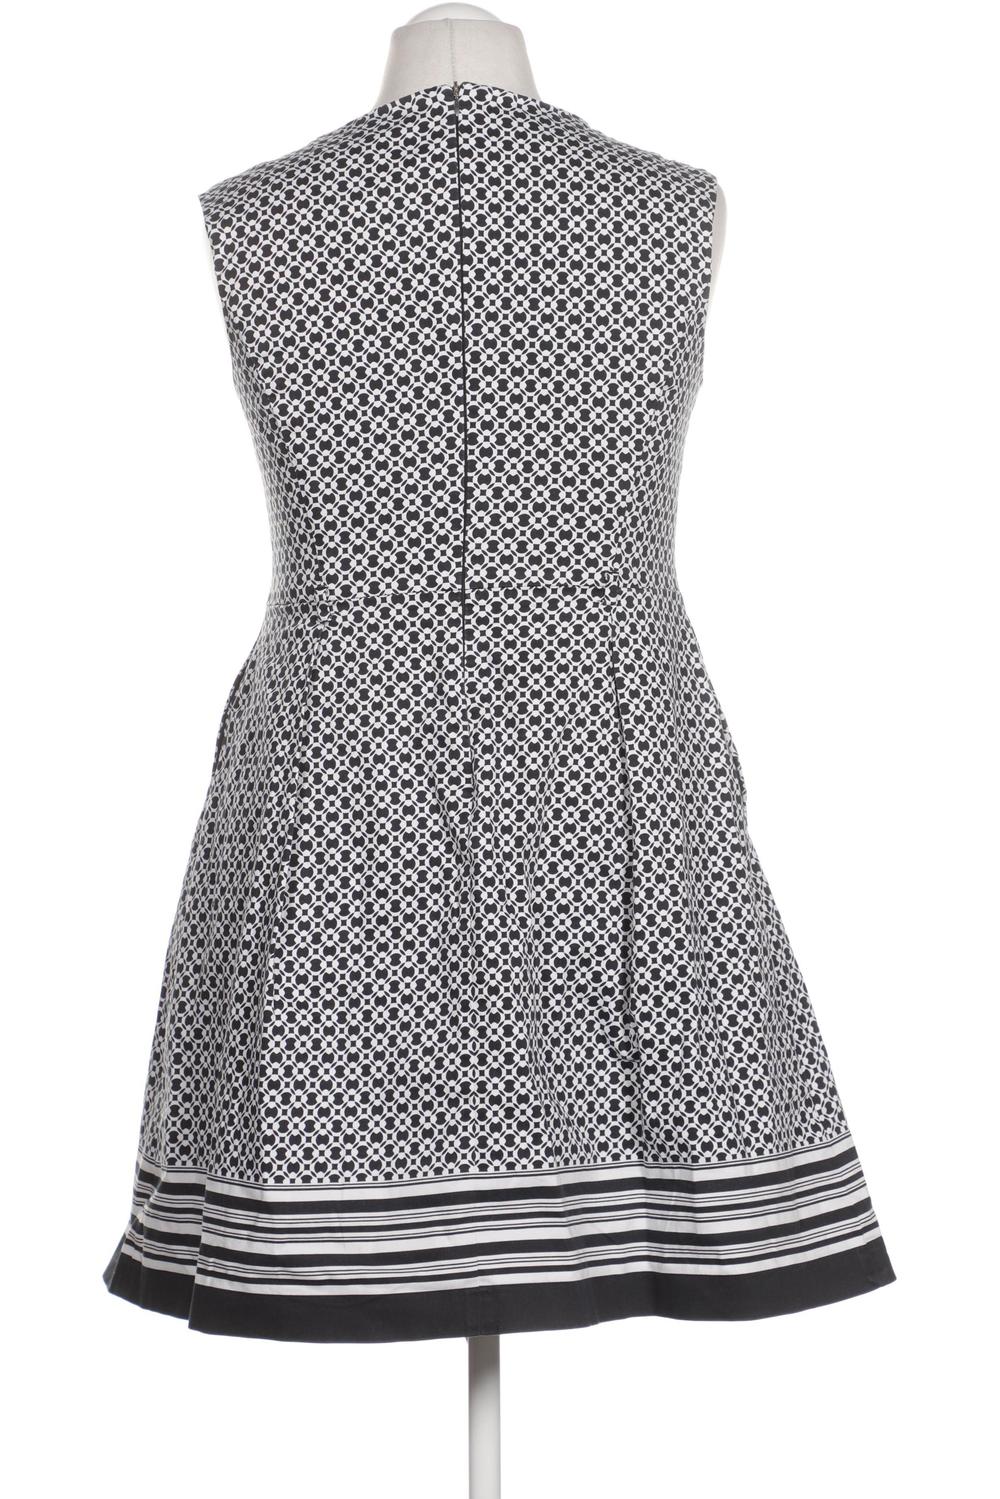 Esprit Damen Kleid DE 42 Second Hand kaufen | ubup